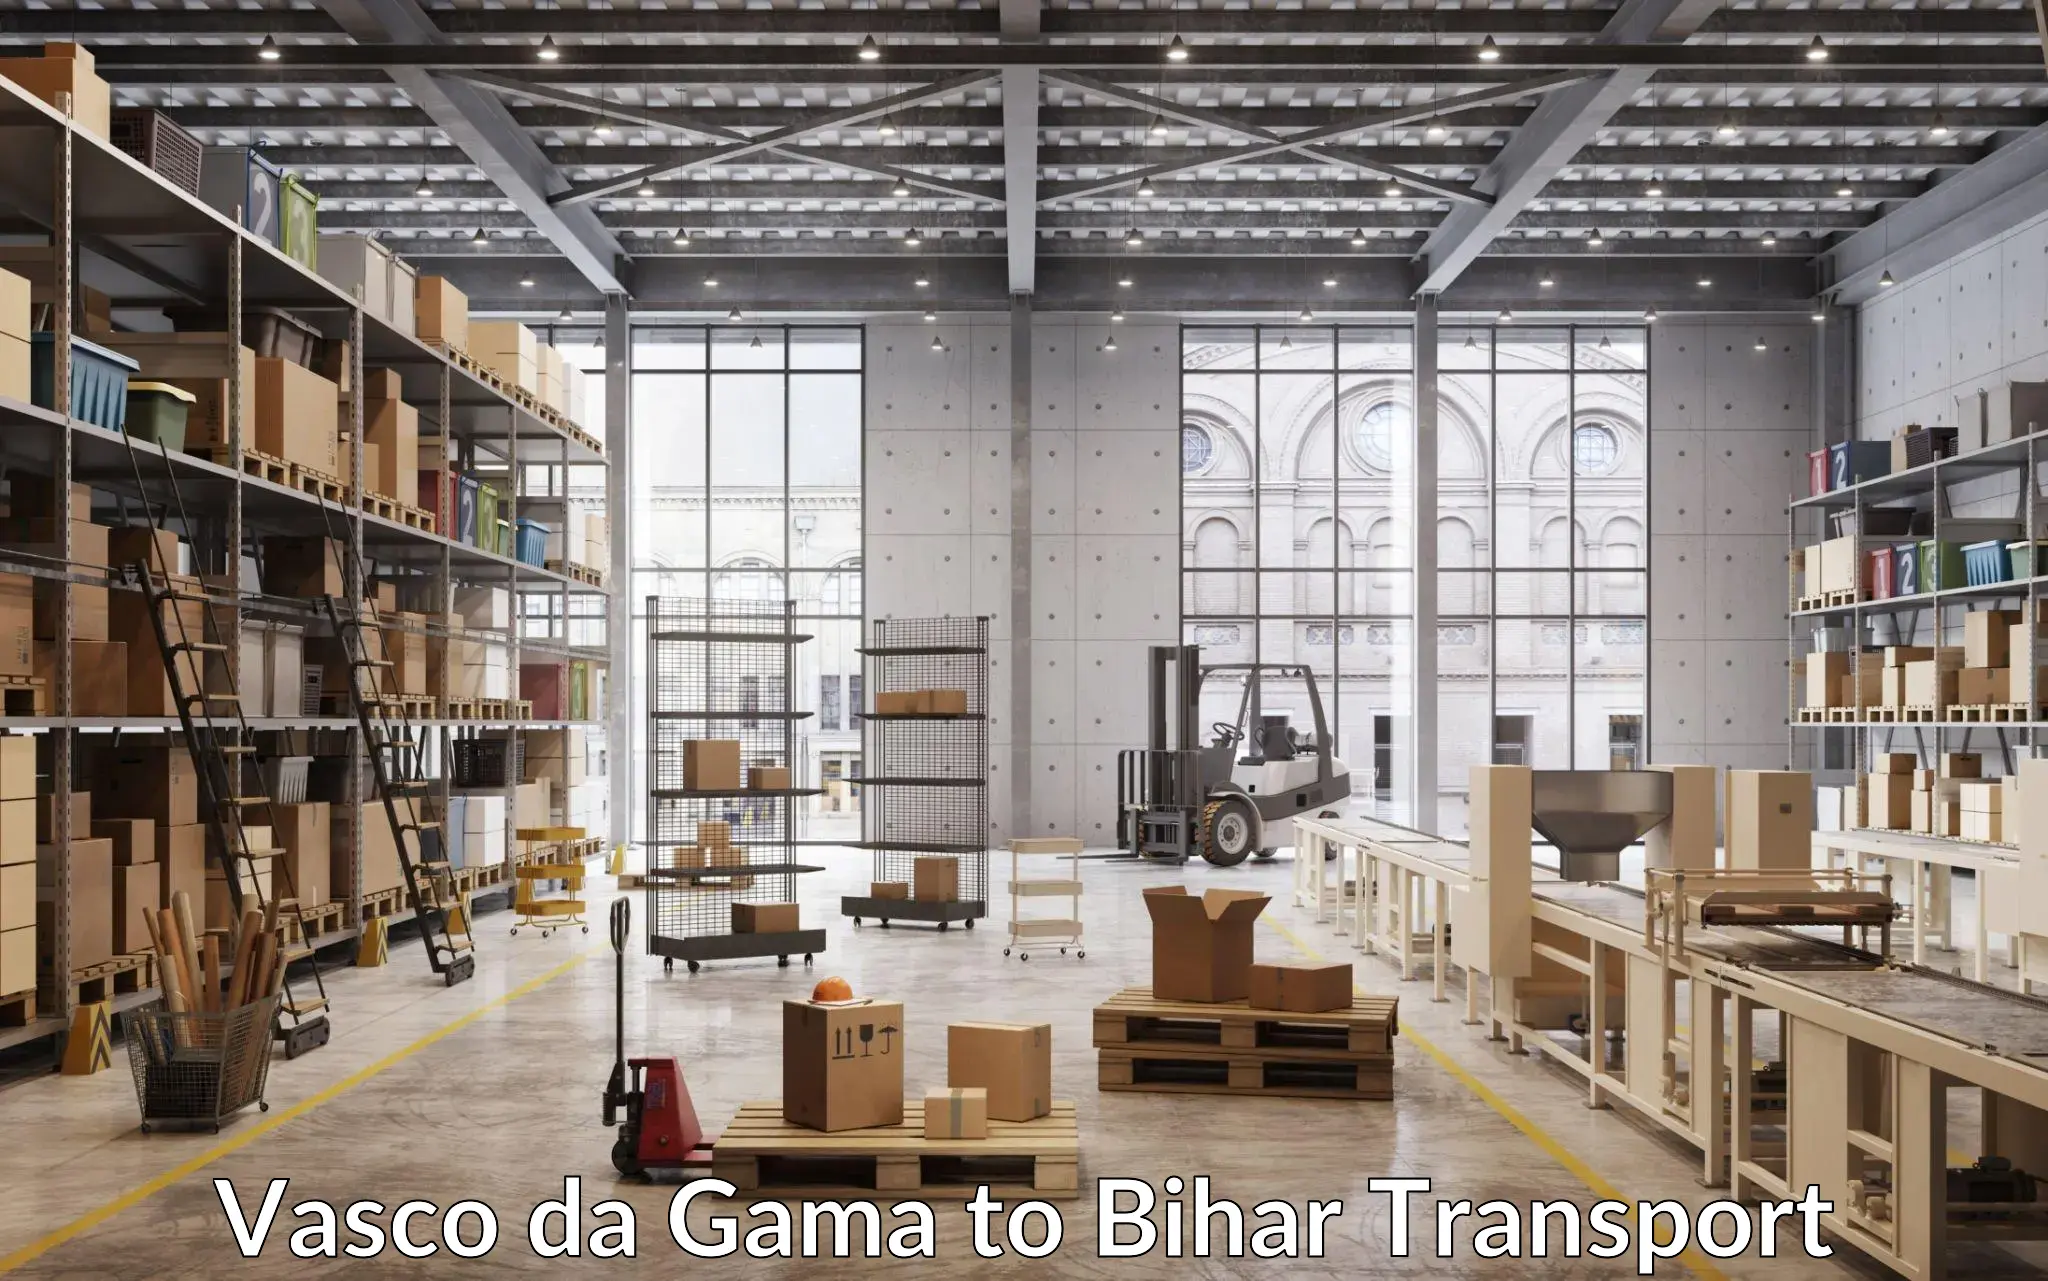 Shipping partner Vasco da Gama to Bihar